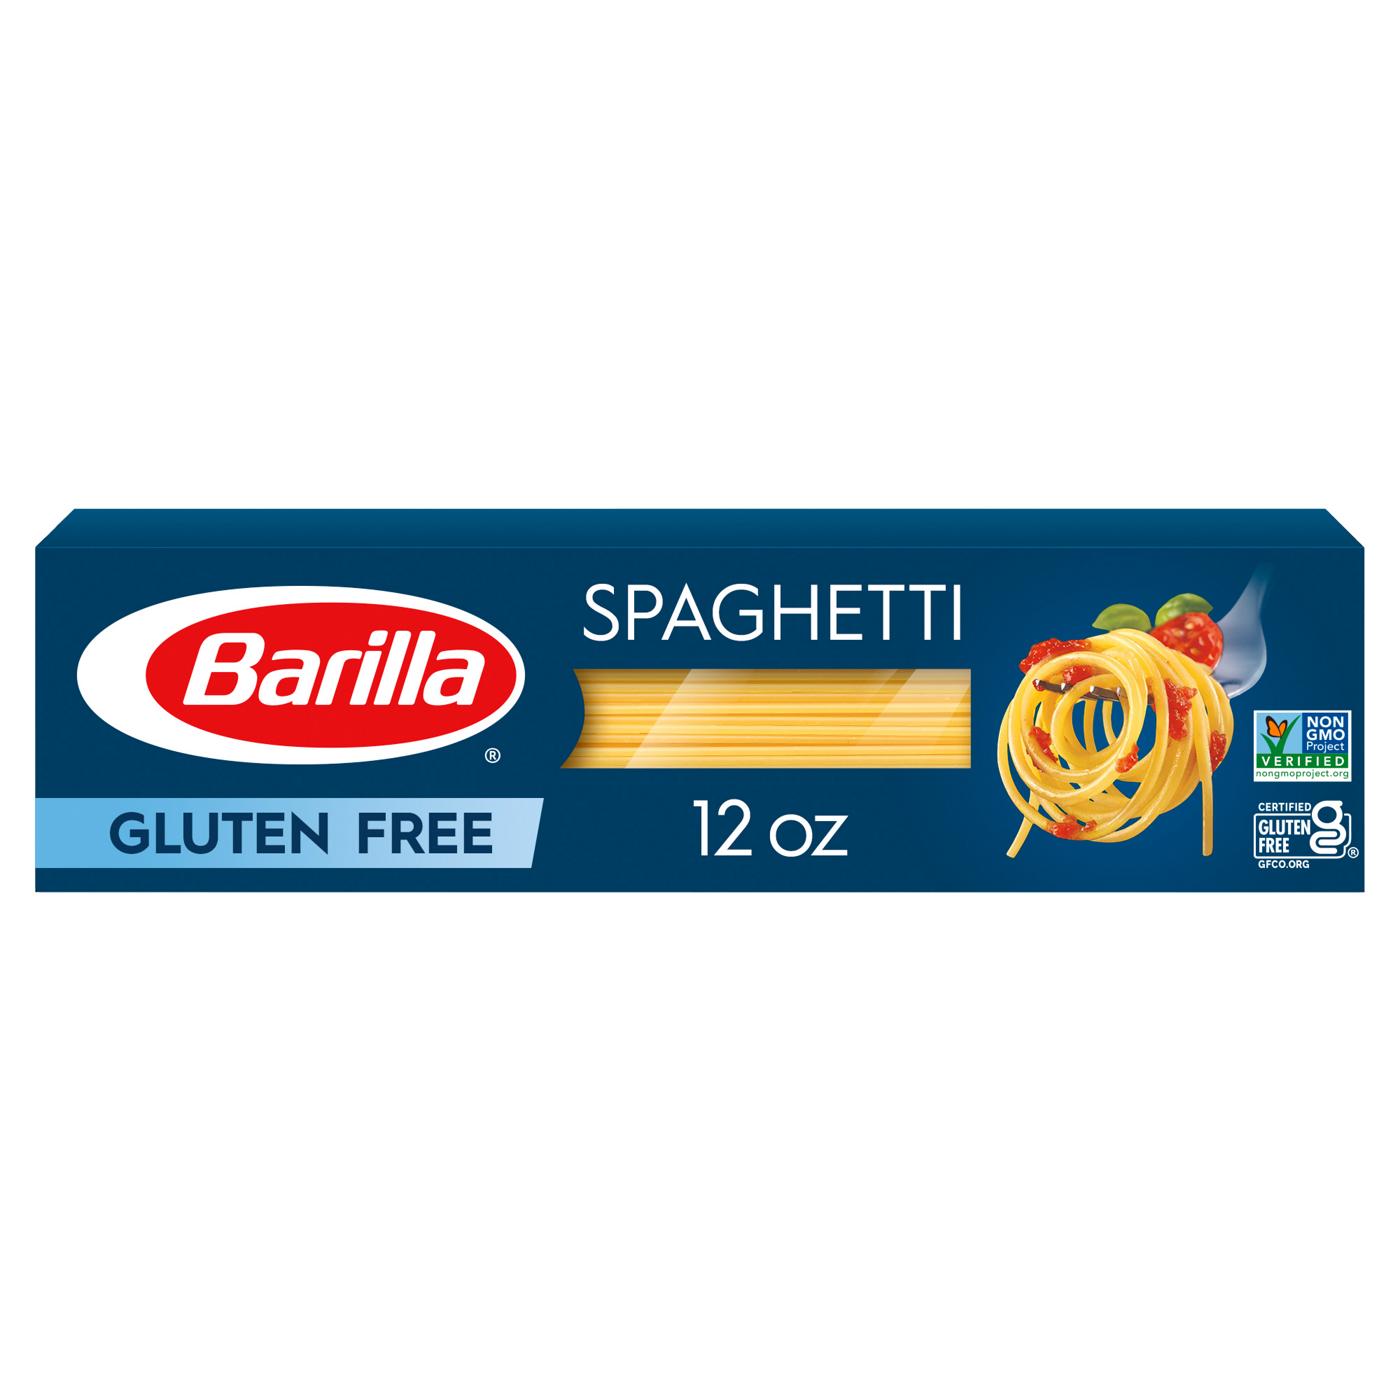 Barilla Gluten Free Spaghetti Pasta; image 1 of 7